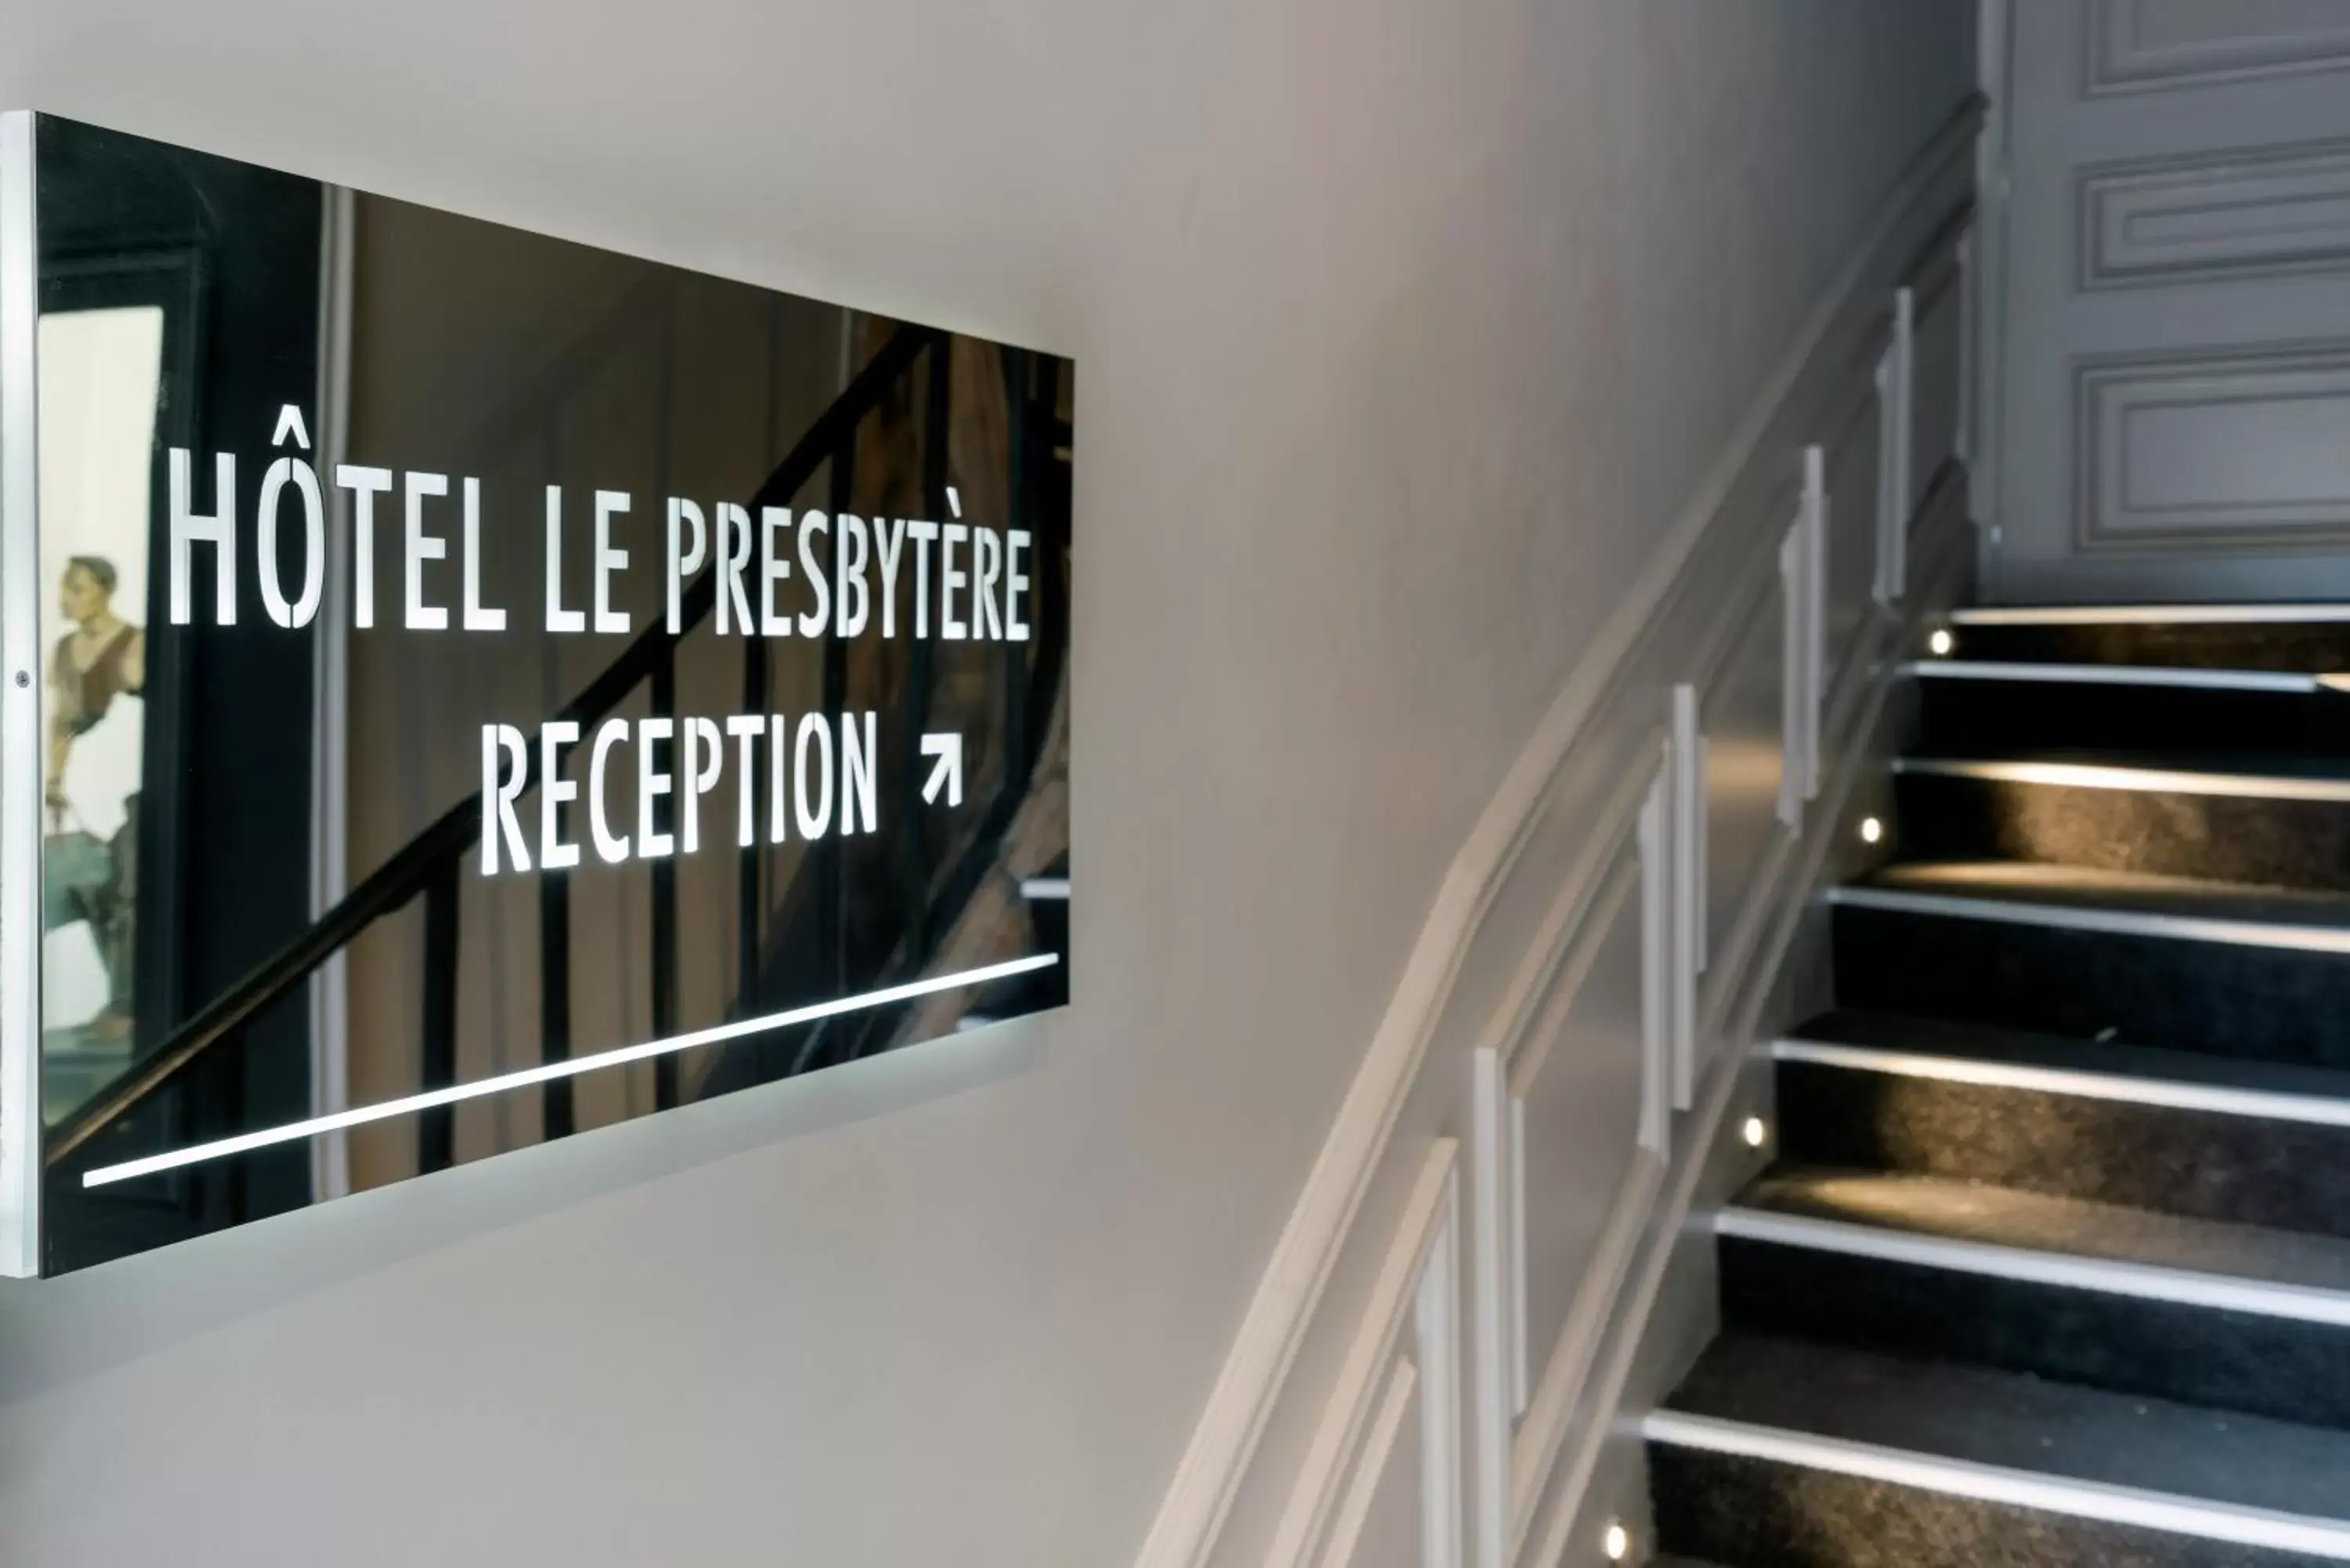 Property logo or sign in Hôtel Le Presbytère